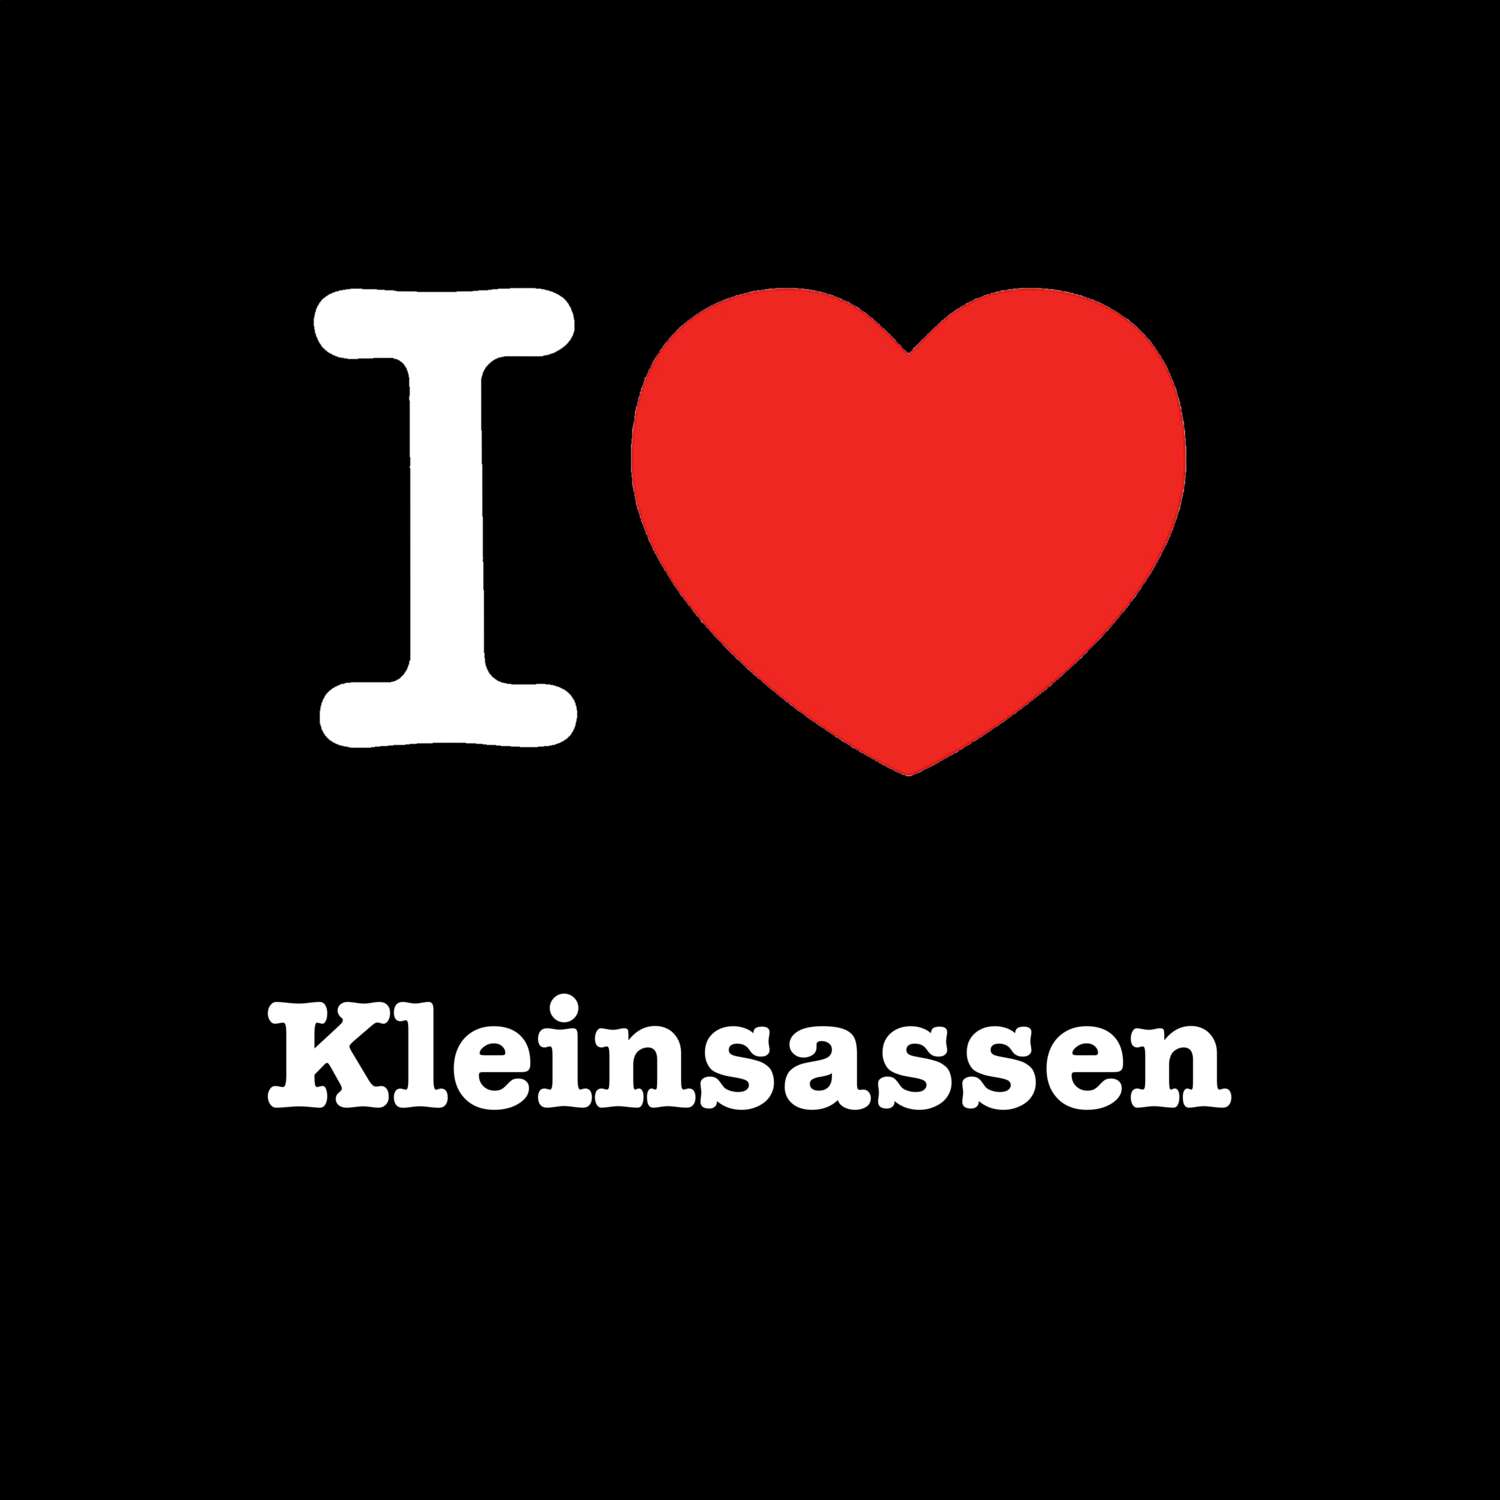 Kleinsassen T-Shirt »I love«